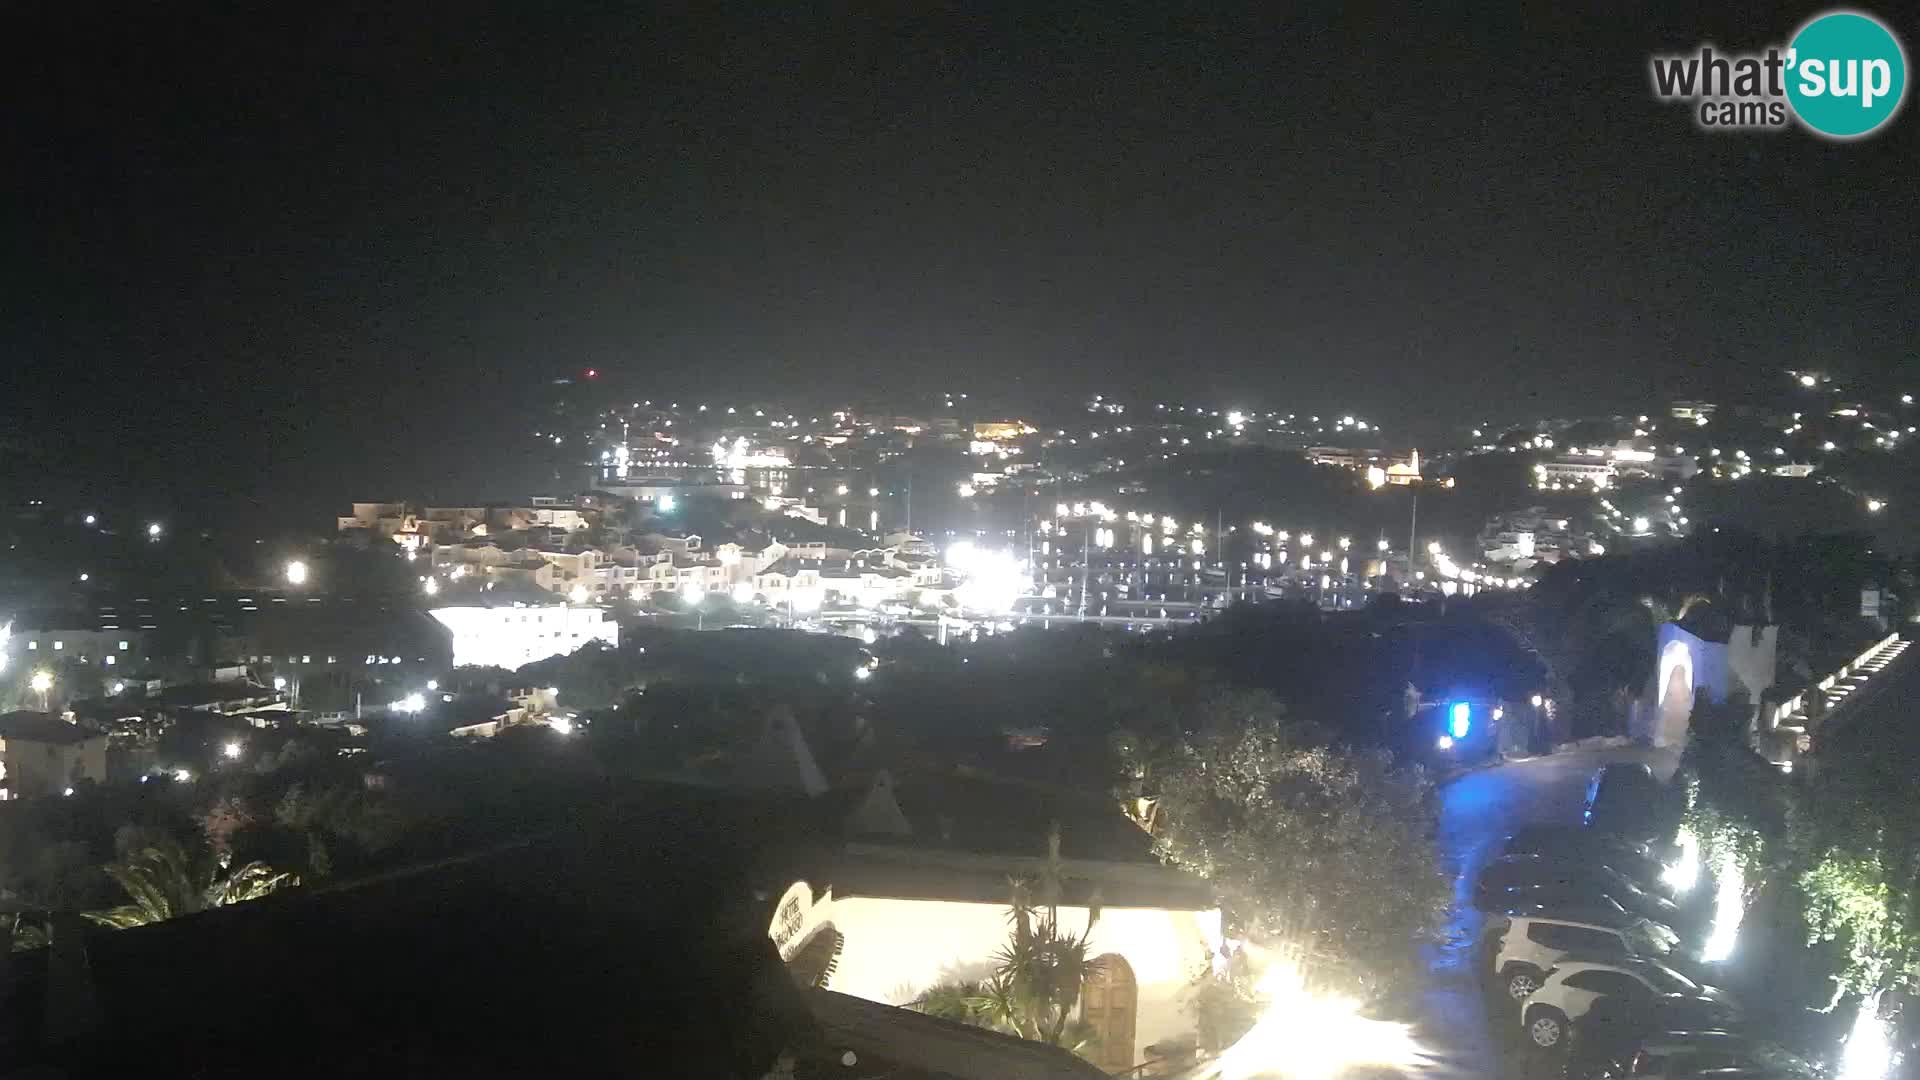 The beautiful Porto Cervo Live webcam – Sardinia – Italy